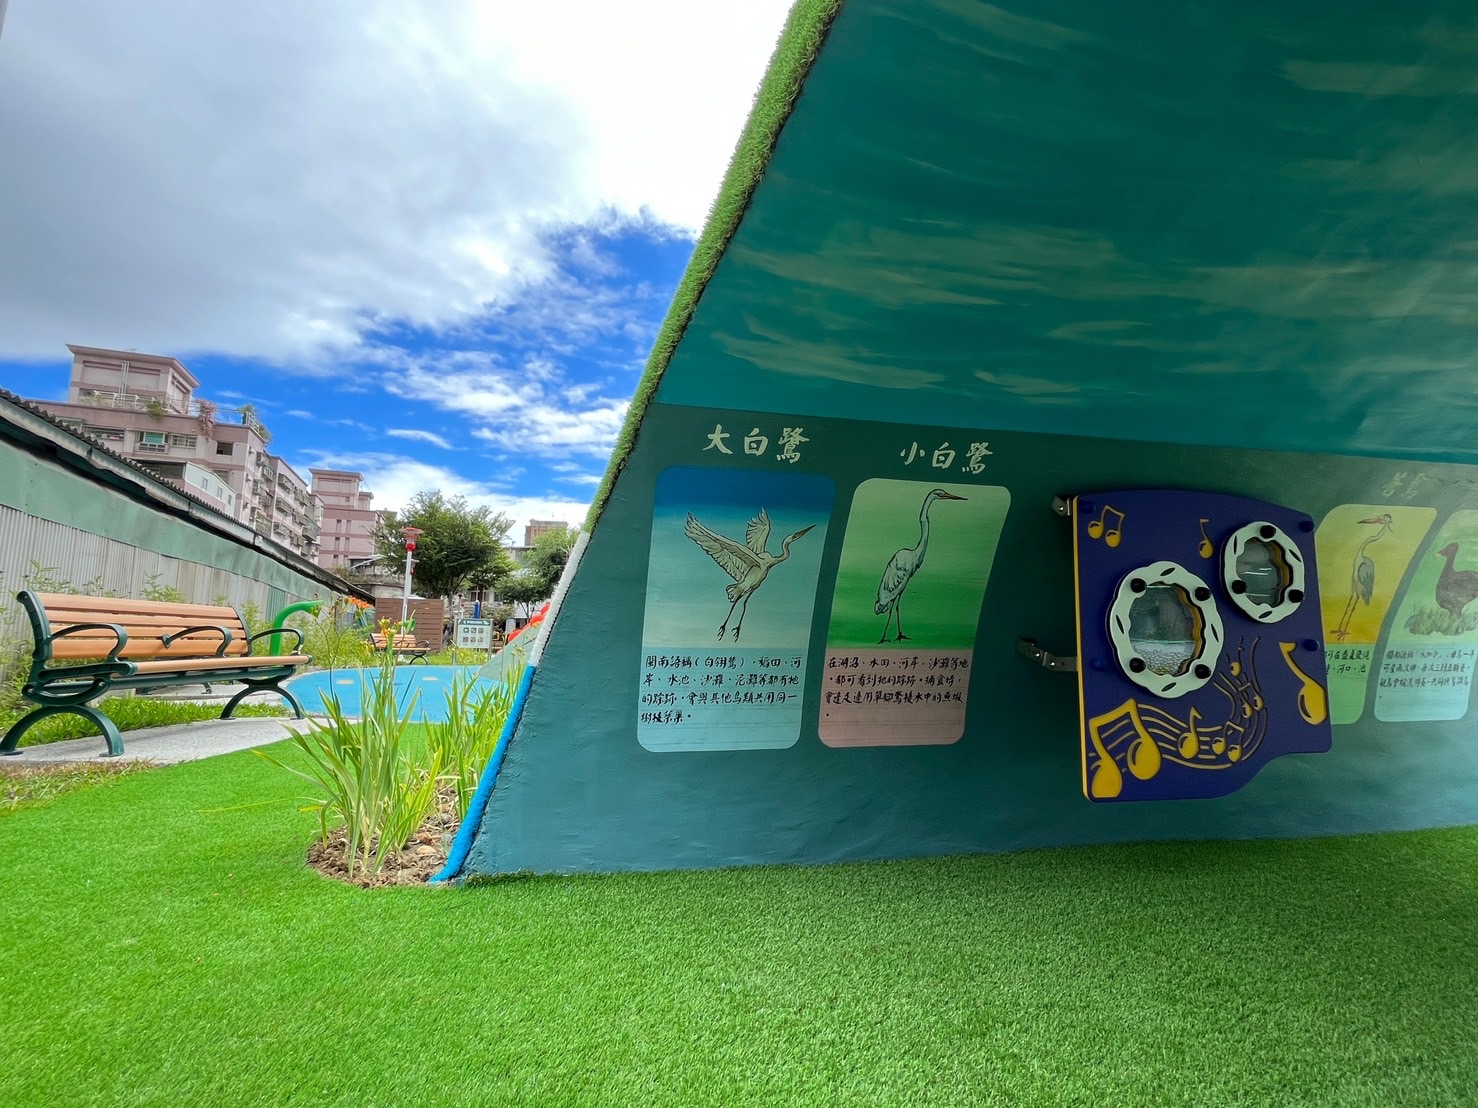 蘆洲兒五樓厝公園以兒童遊戲設施為主題，將蘆洲河岸鳥棲生態「鳥棲之丘」元素融入公園